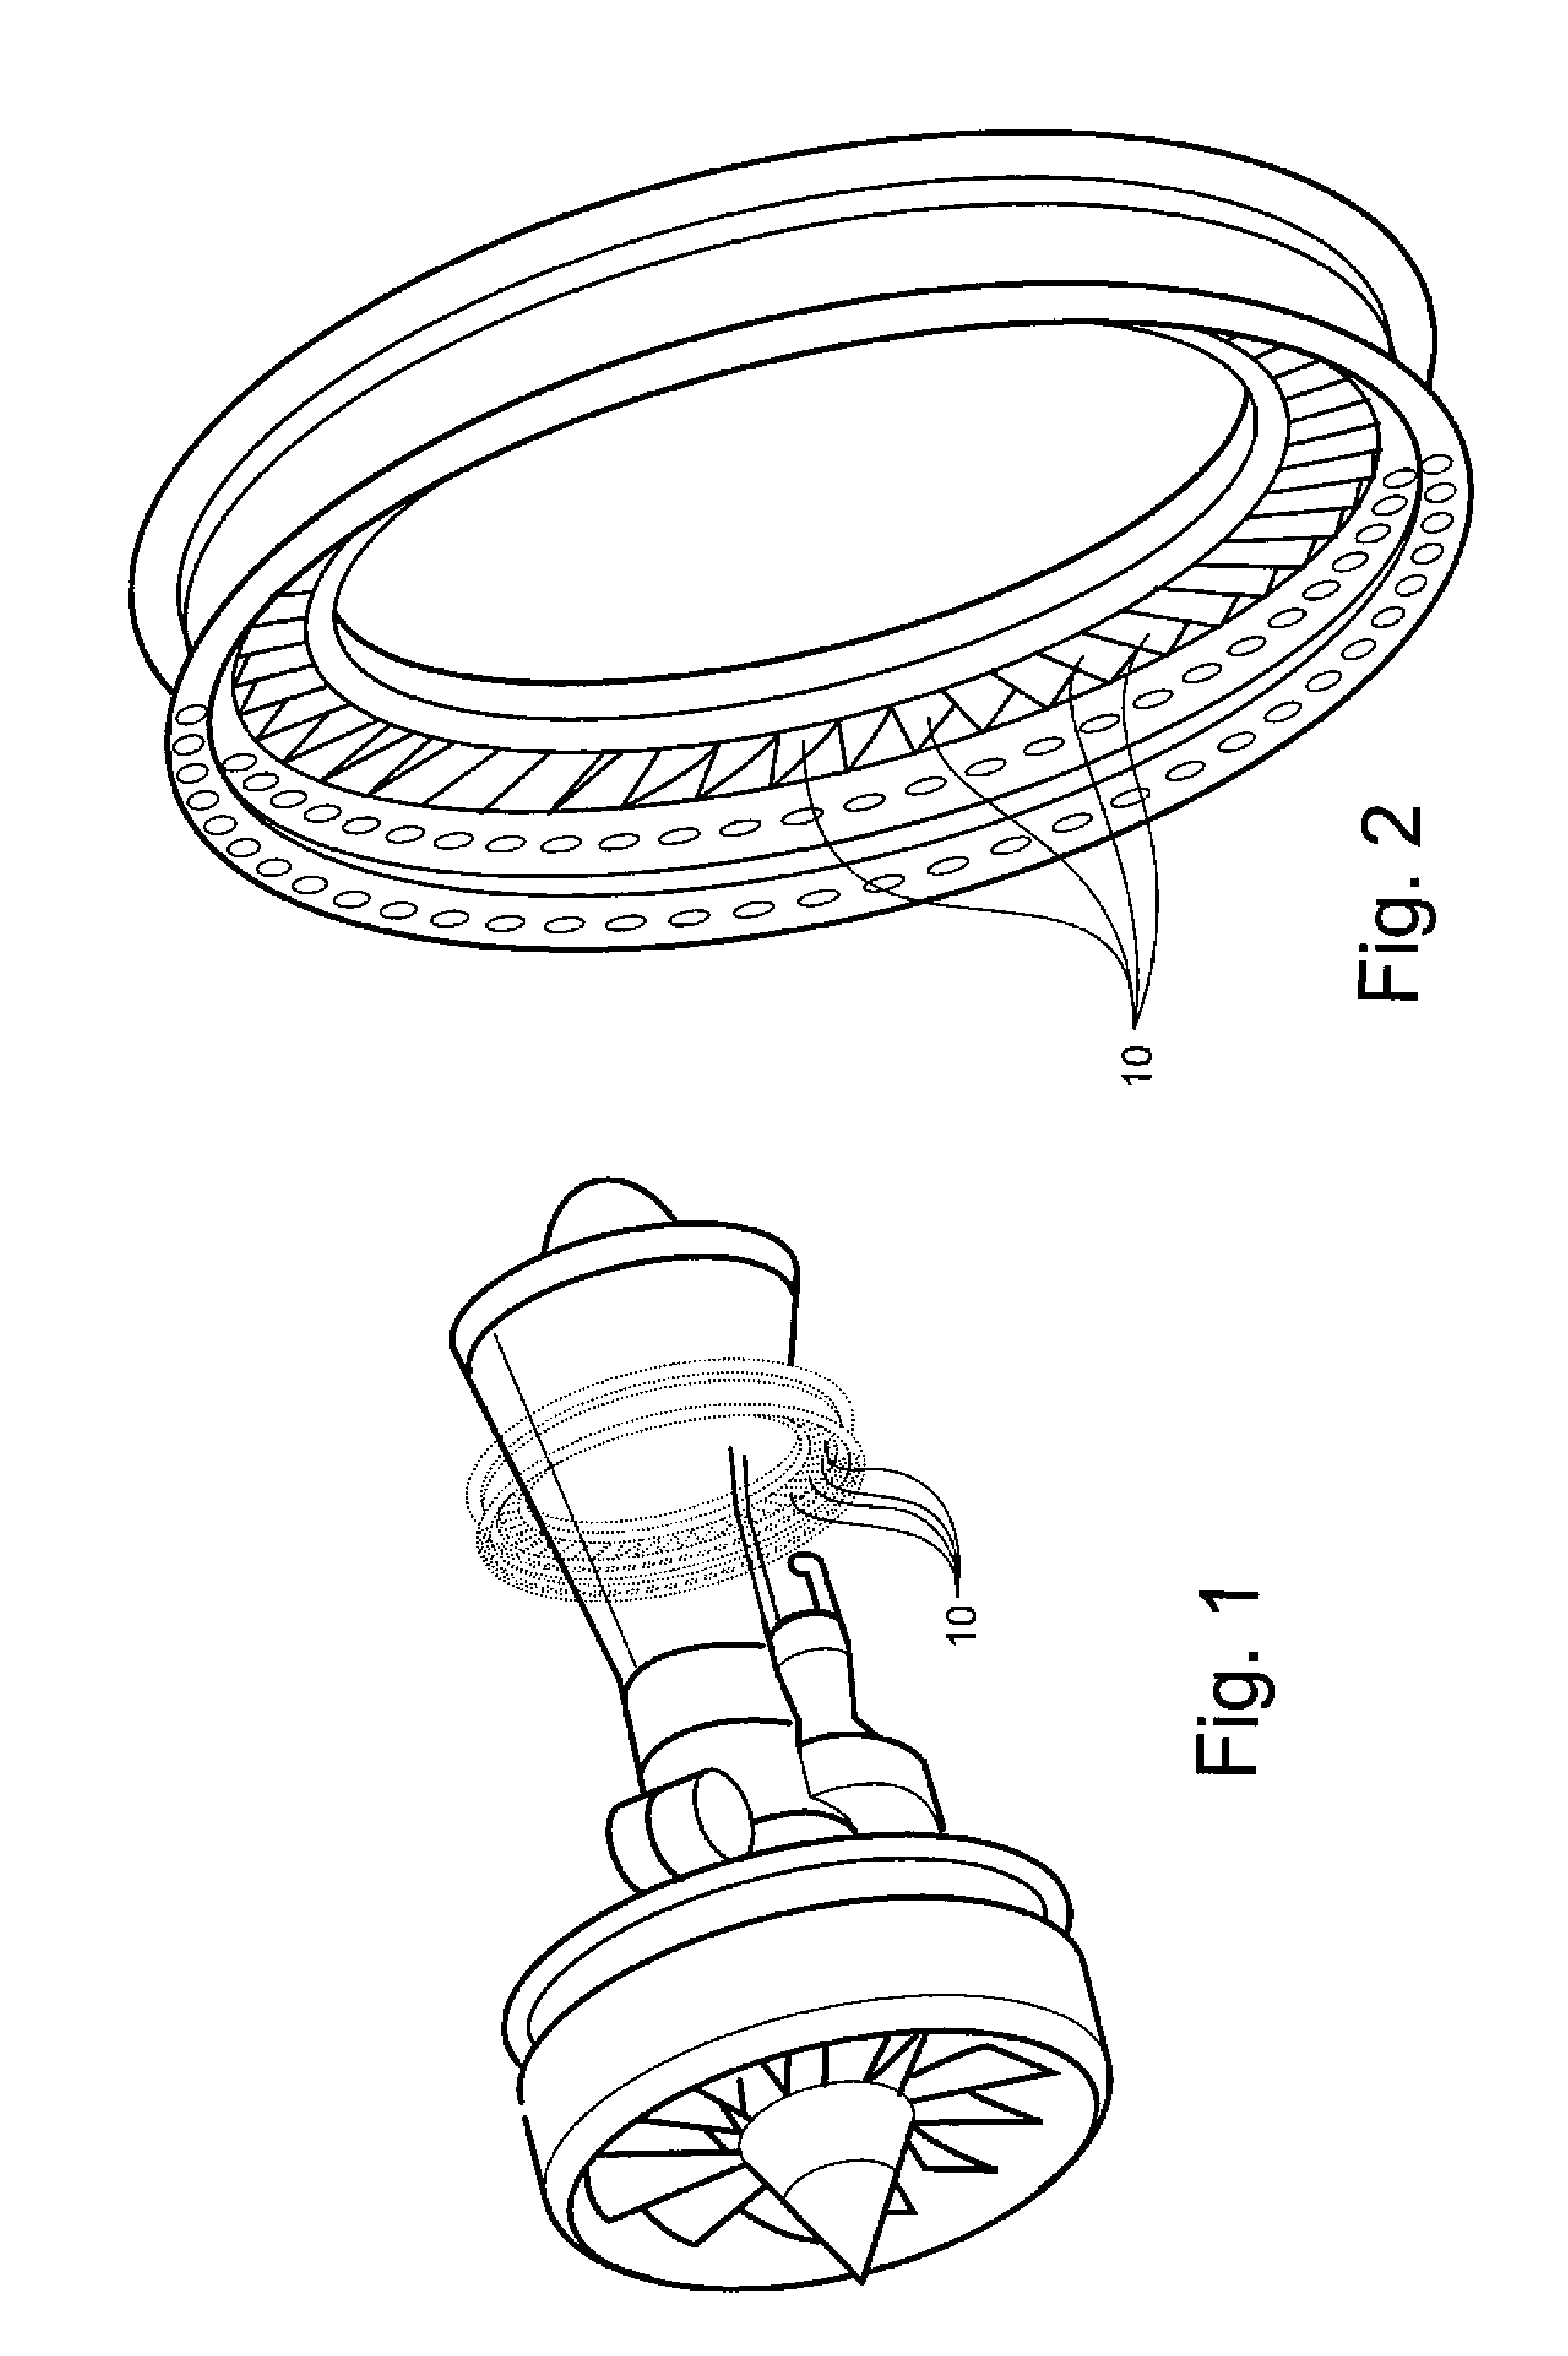 Turbine nozzle segment and repair method